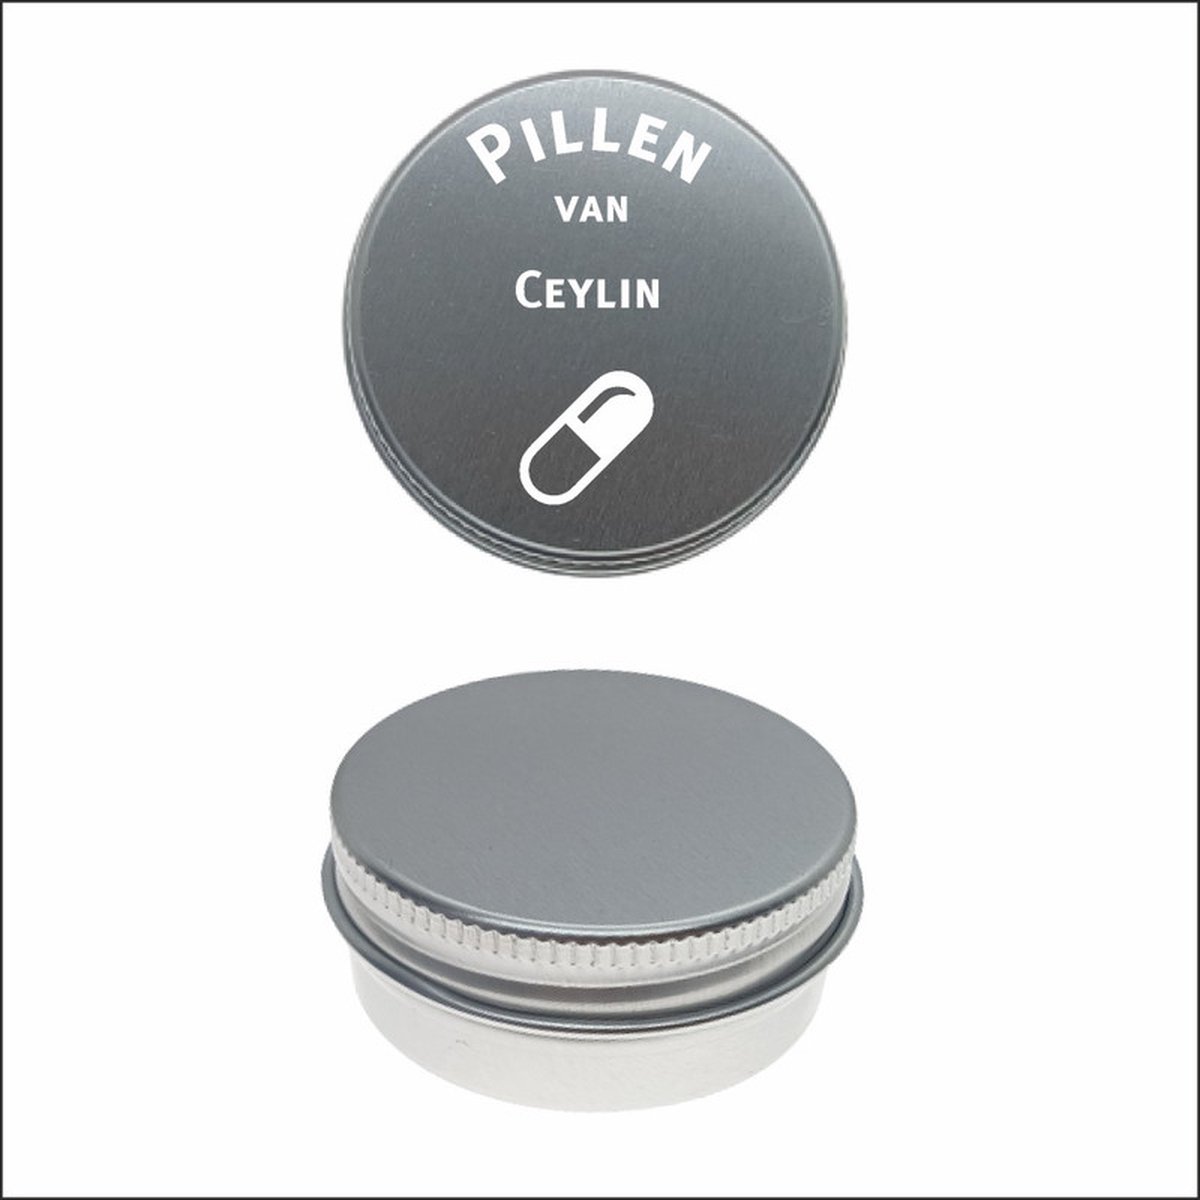 Pillen Blikje Met Naam Gravering - Ceylin